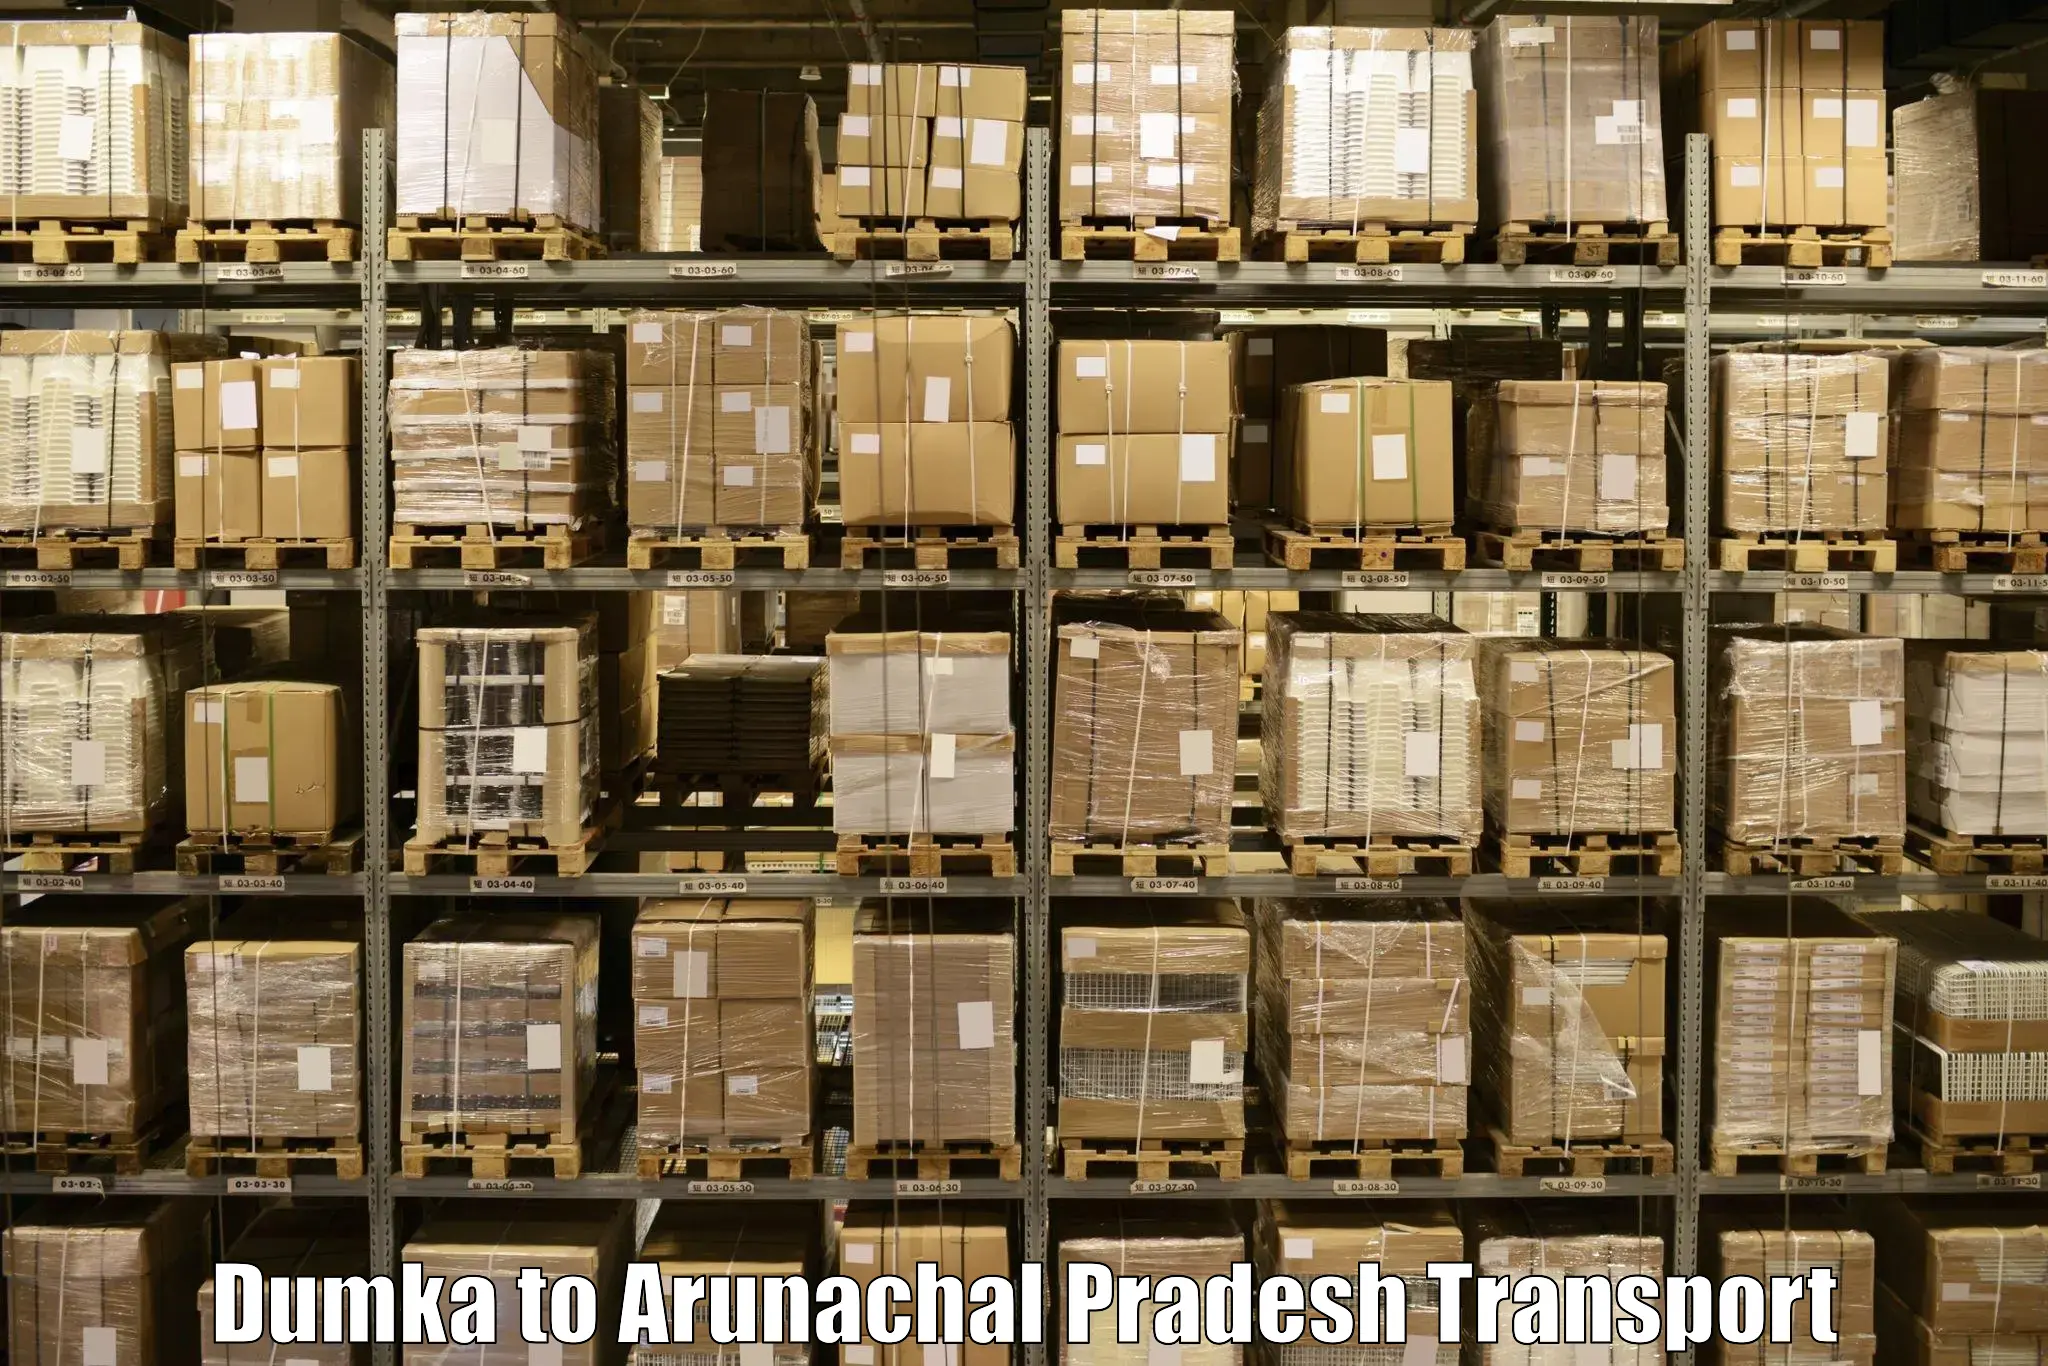 Commercial transport service Dumka to Itanagar